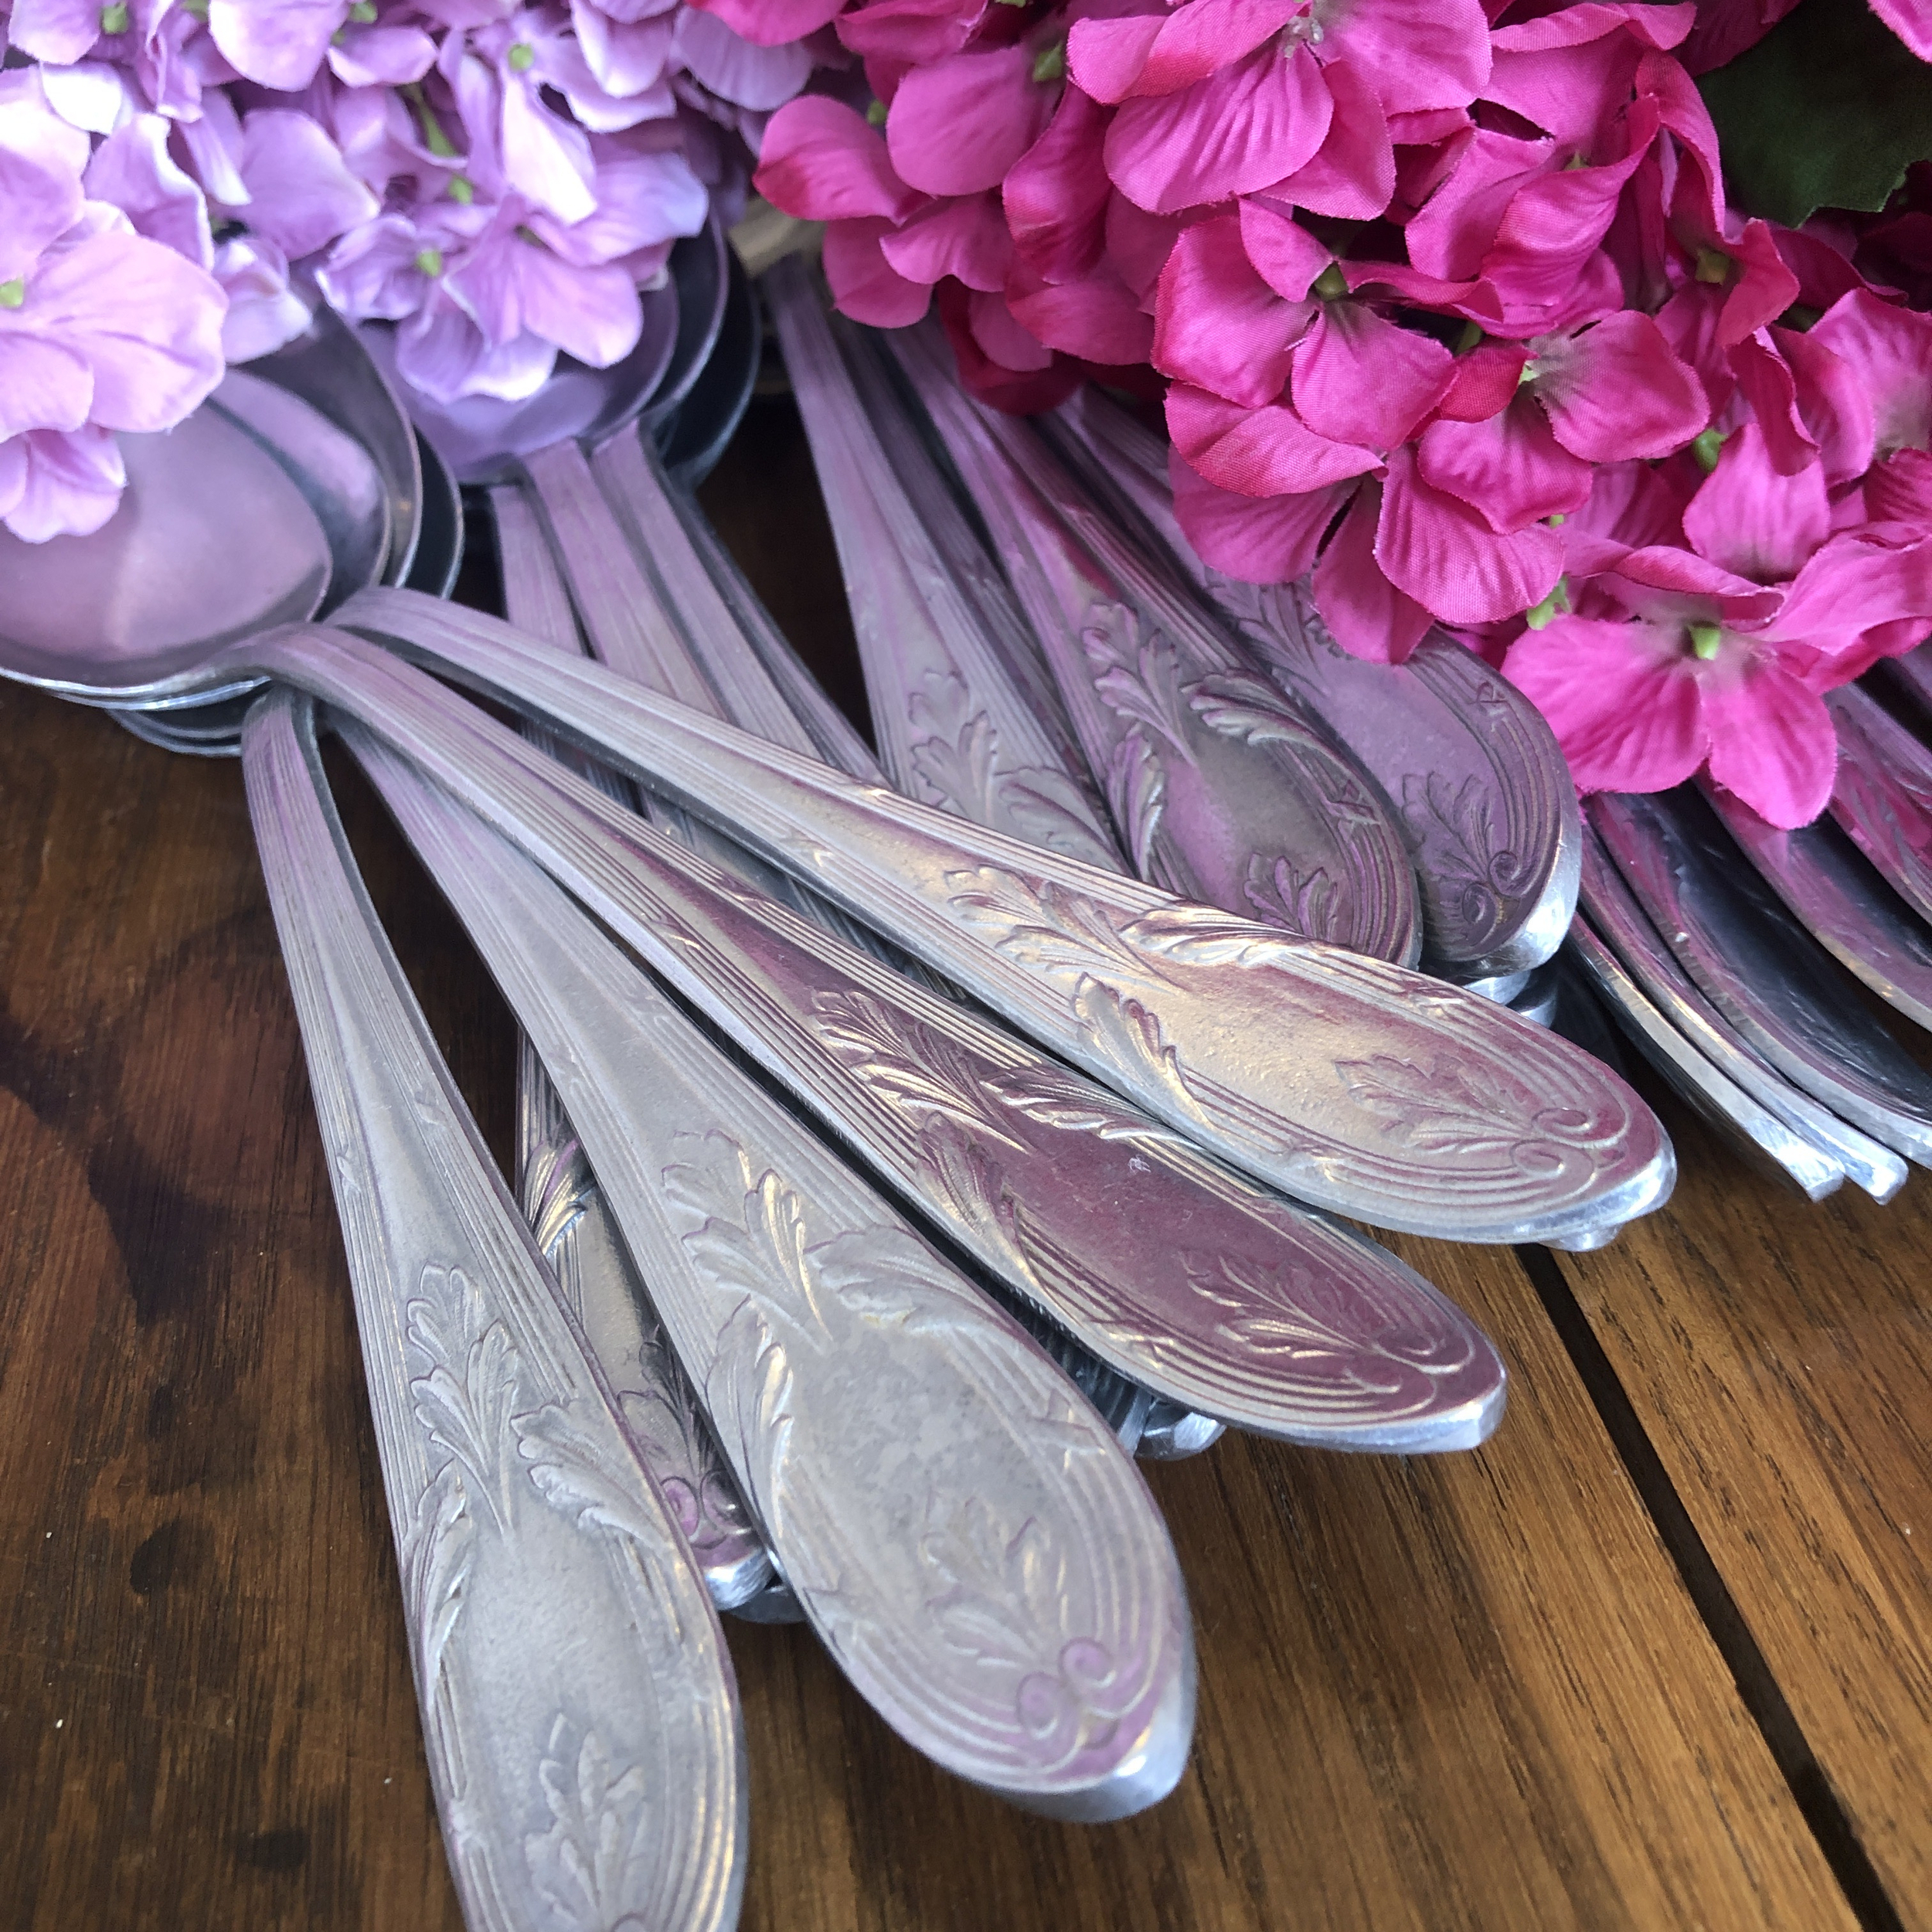 chineuse de merveilles fourchettes, cuilleres, couteaux couverts, brocante, vintage IMG_3537